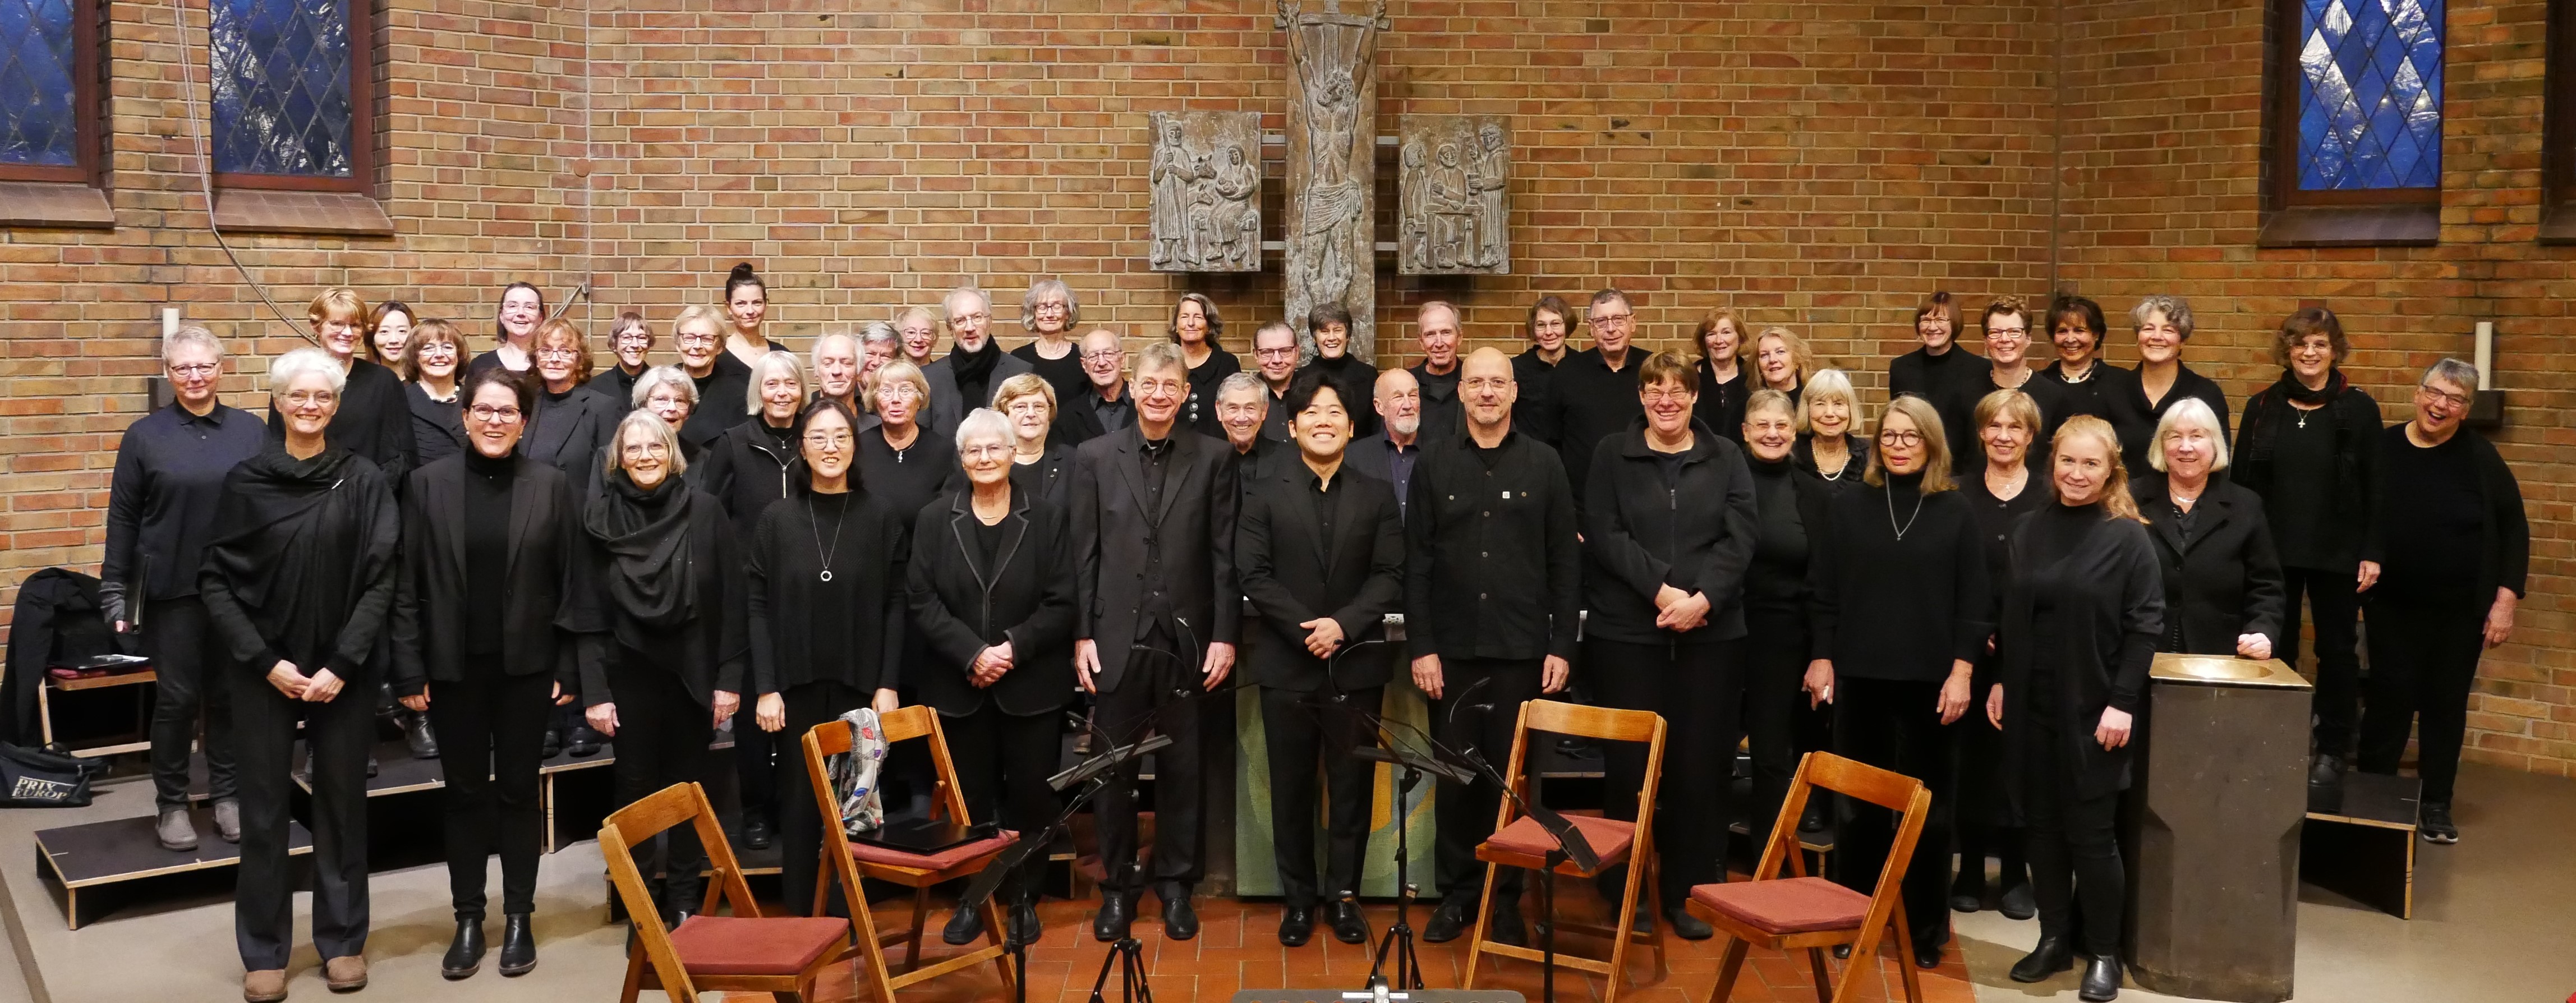 Die Sängerinnen und Sänger des Projektchores Oberalster im Alterraum der Matthias-Claudius-Kirche 